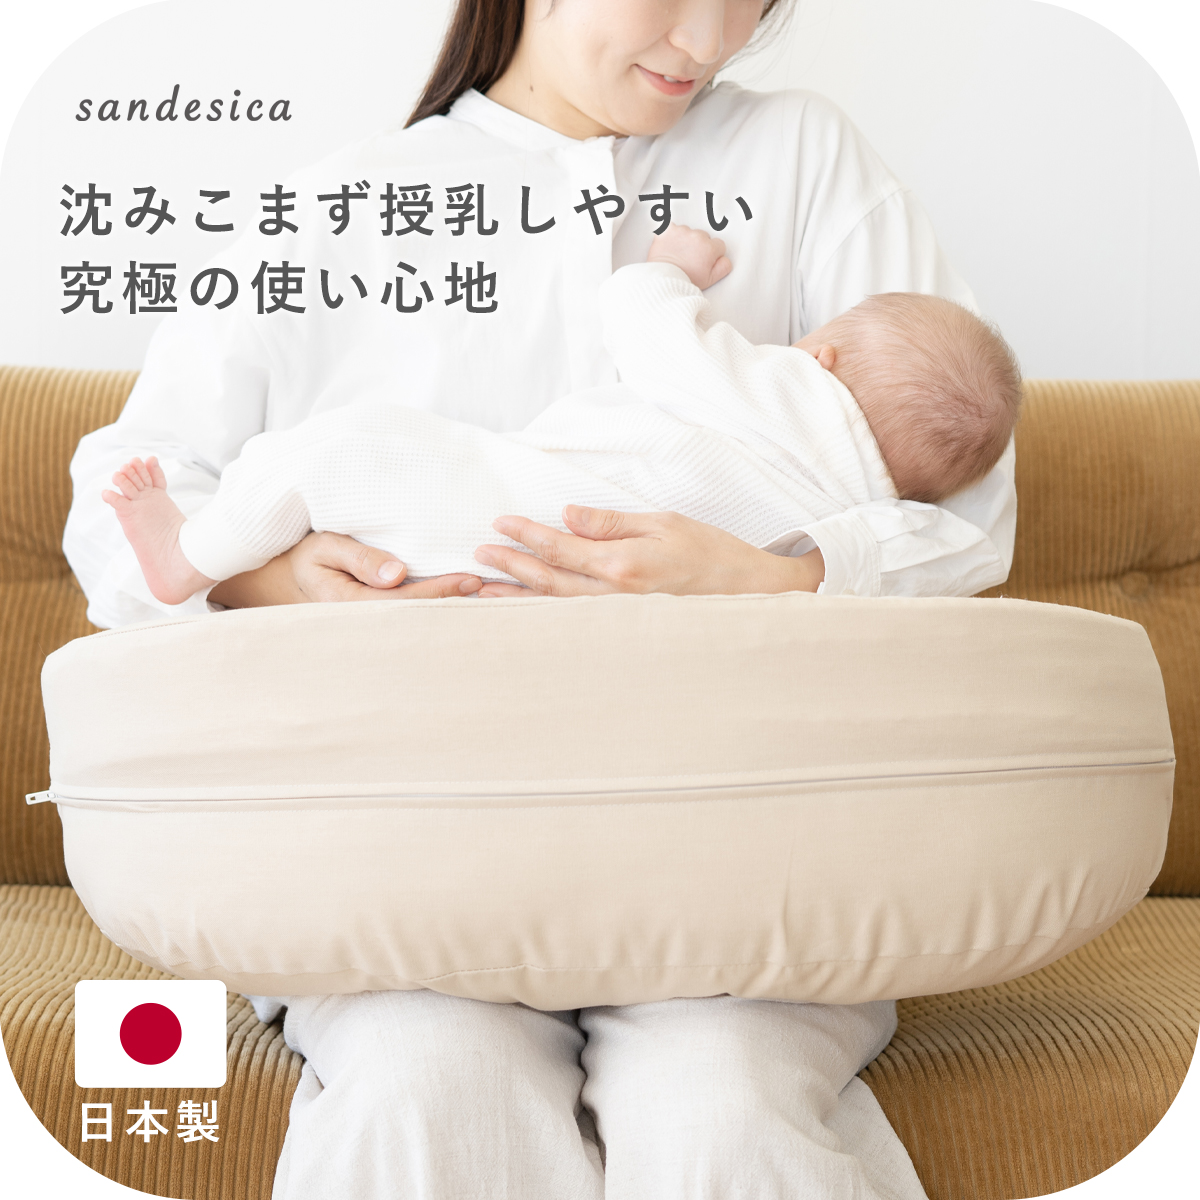 究極の授乳クッション 日本製 カバー式 調節できるウエストベルト付き 撥水 カバー 体型に合わせて高さが調節できる 出産祝い sandesica  送料無料 サンデシカ公式通販